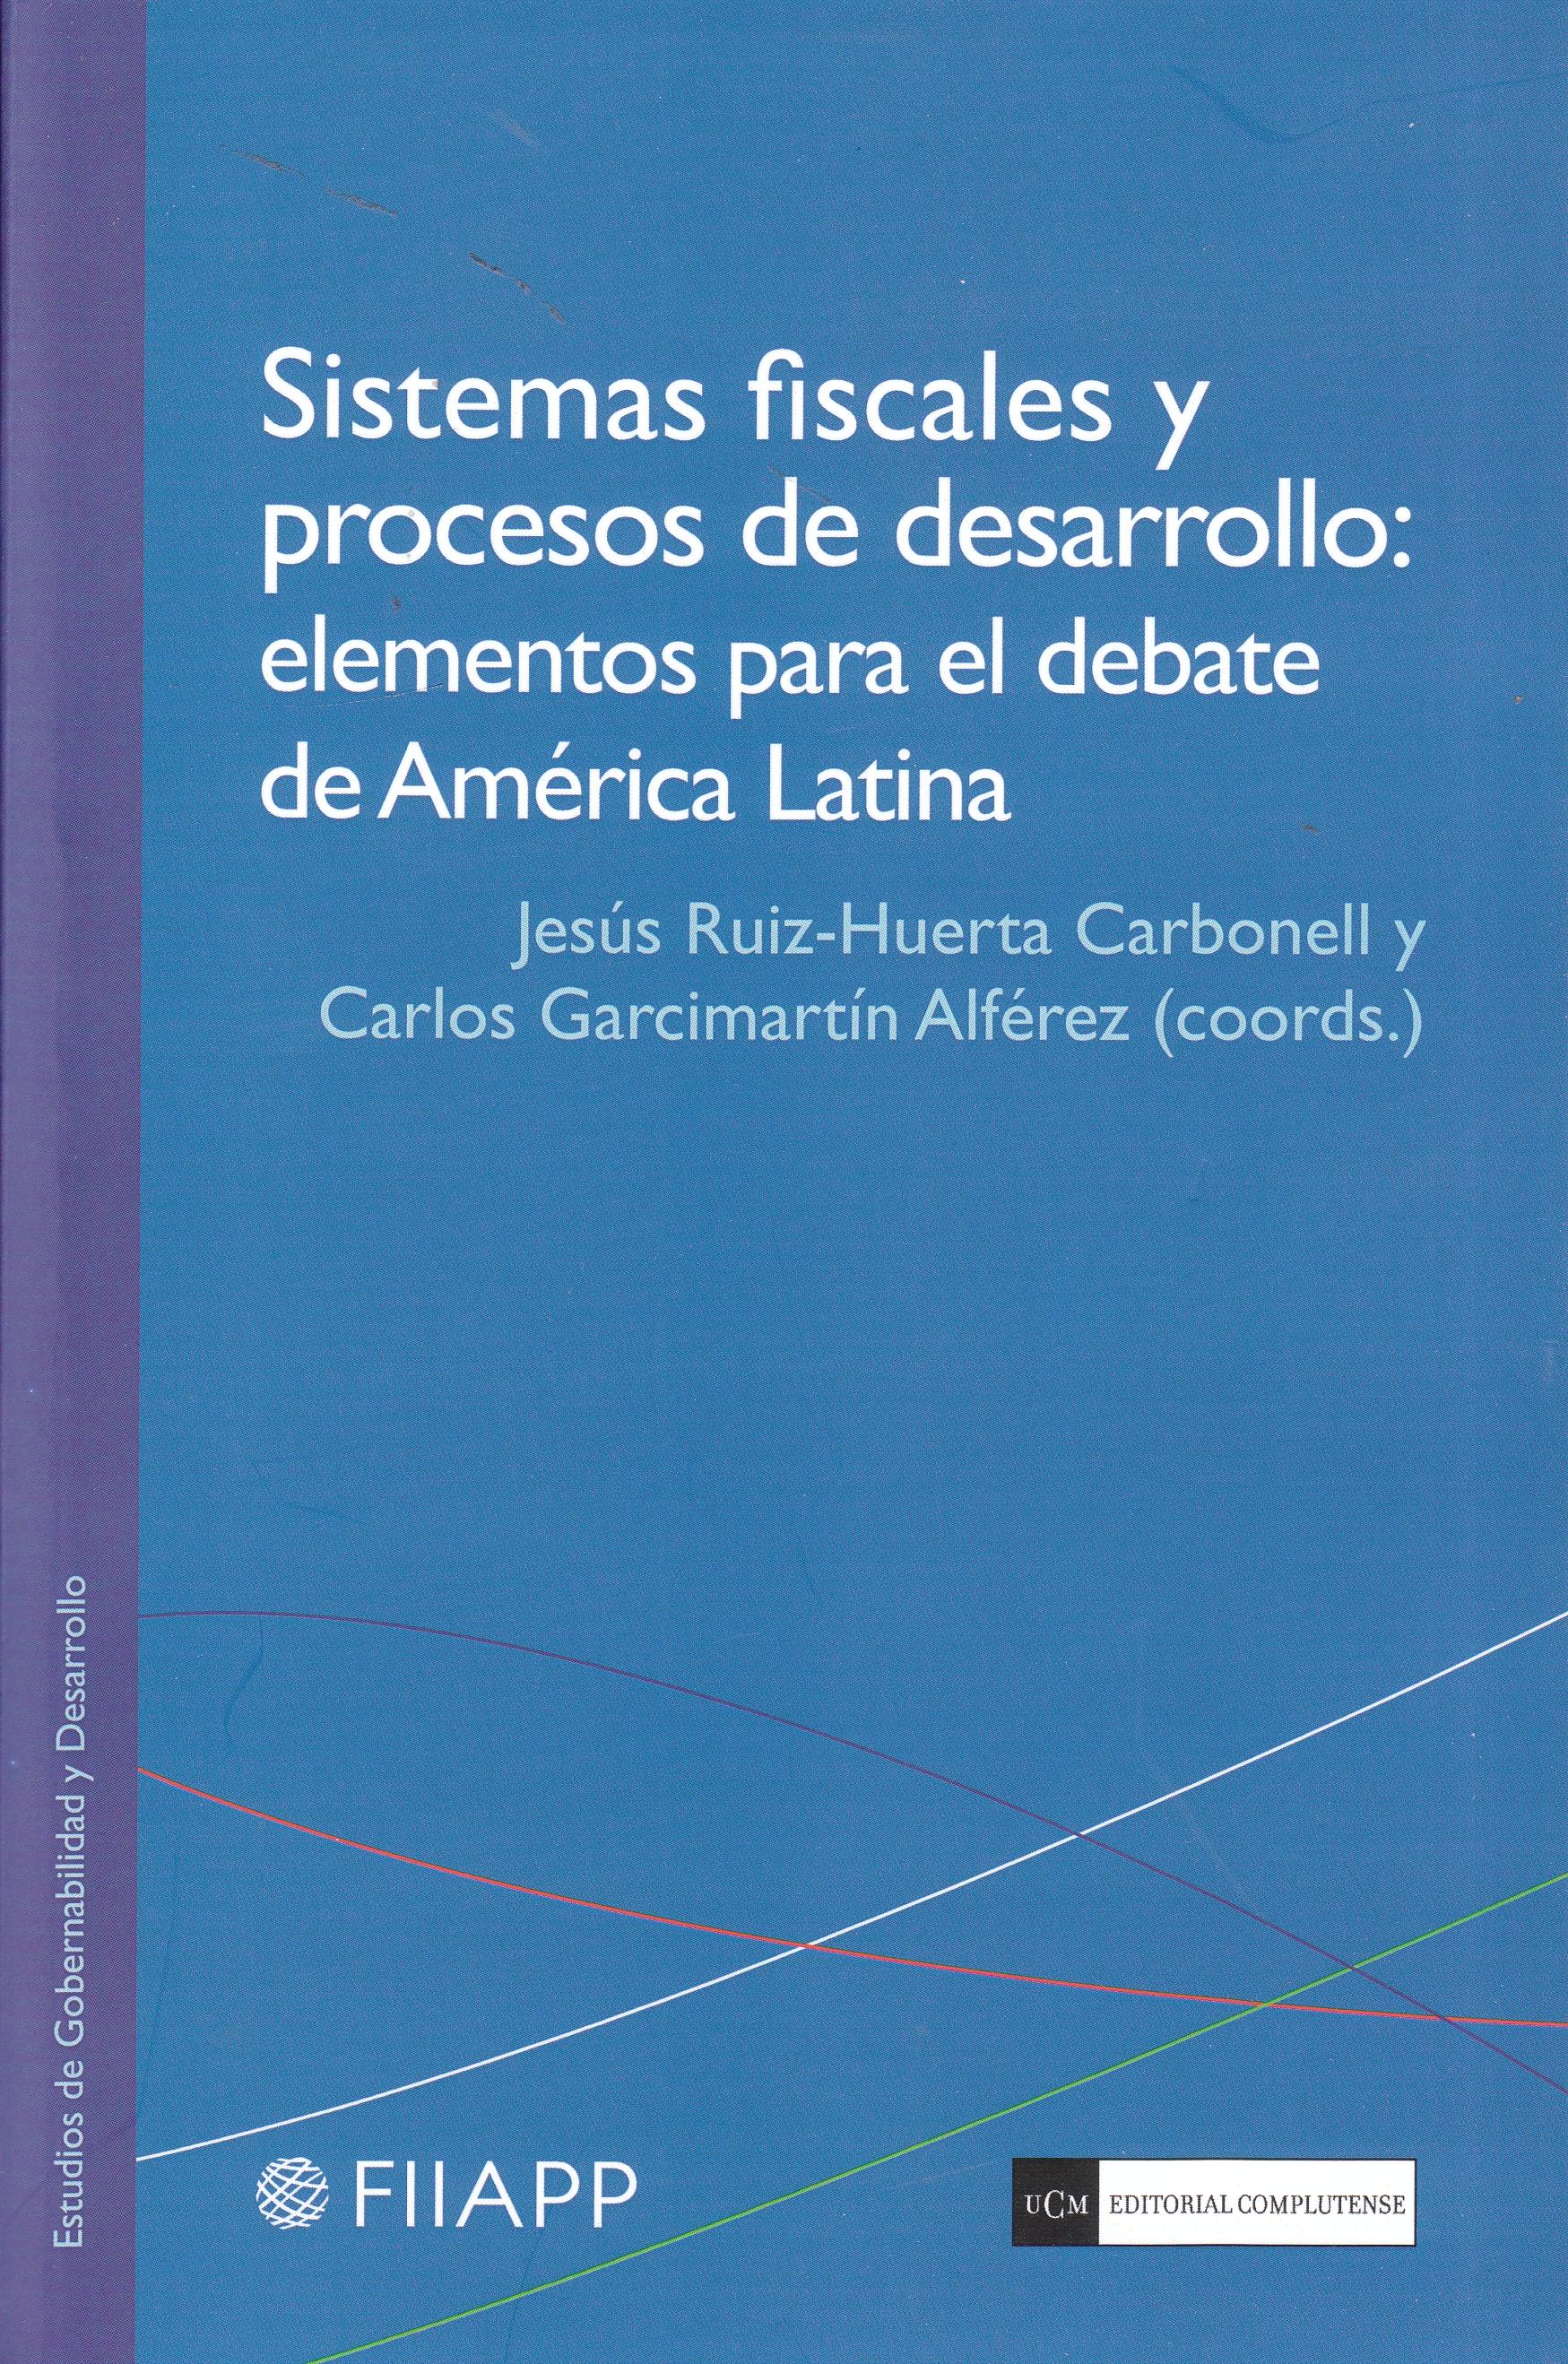 Sistemas fiscales y procesos de desarrollo "Elementos para el debate de América Latina"